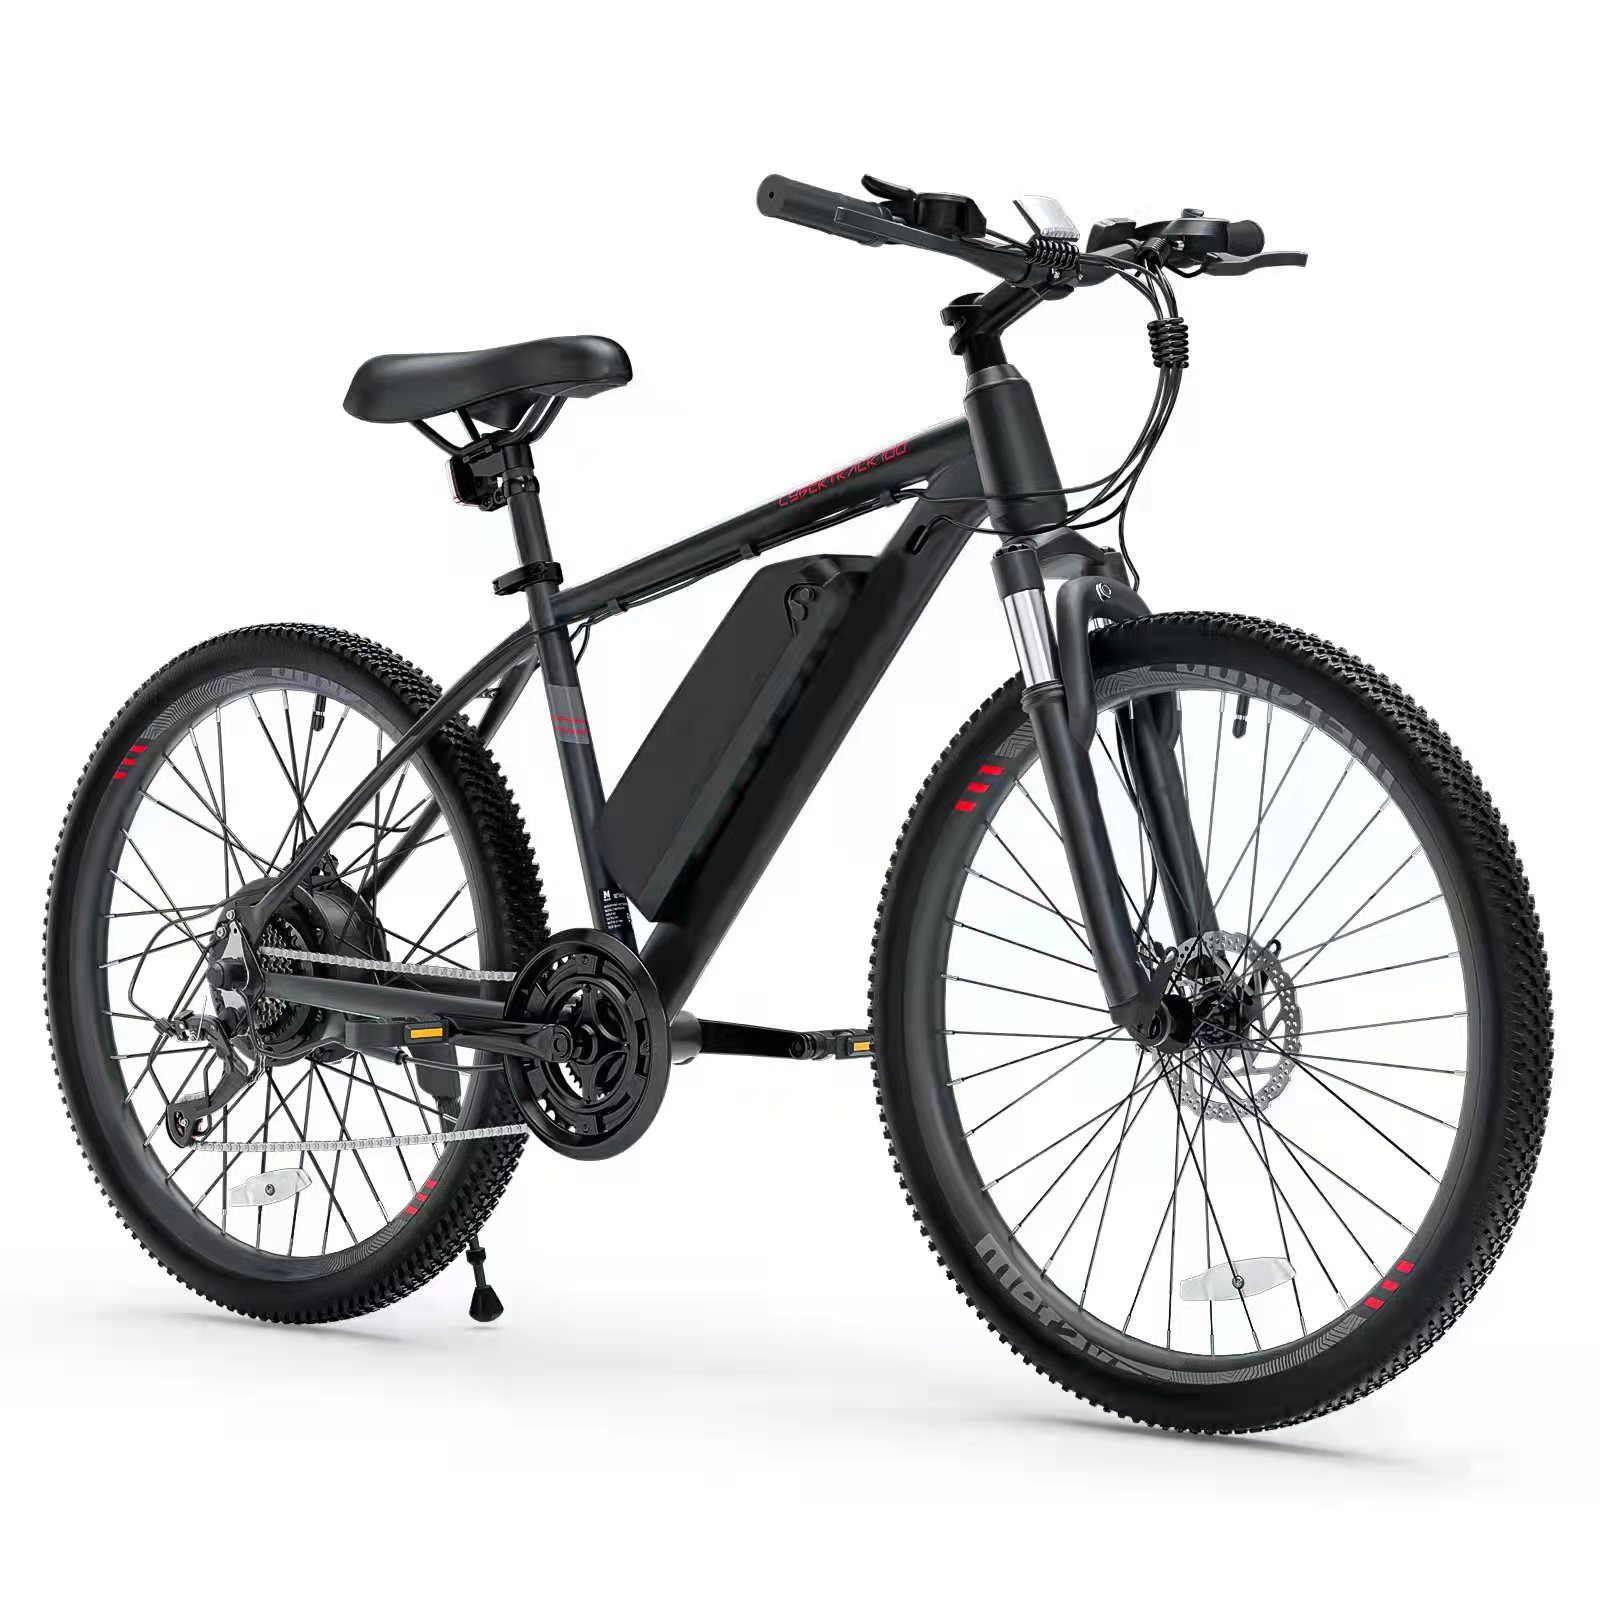 [CA diretto] C100 26 pollici in mountain bike 350W Bangfang Motore Electric Bicycle con batteria agli ioni di litio 36V rimovibile da 36 V 10,4A